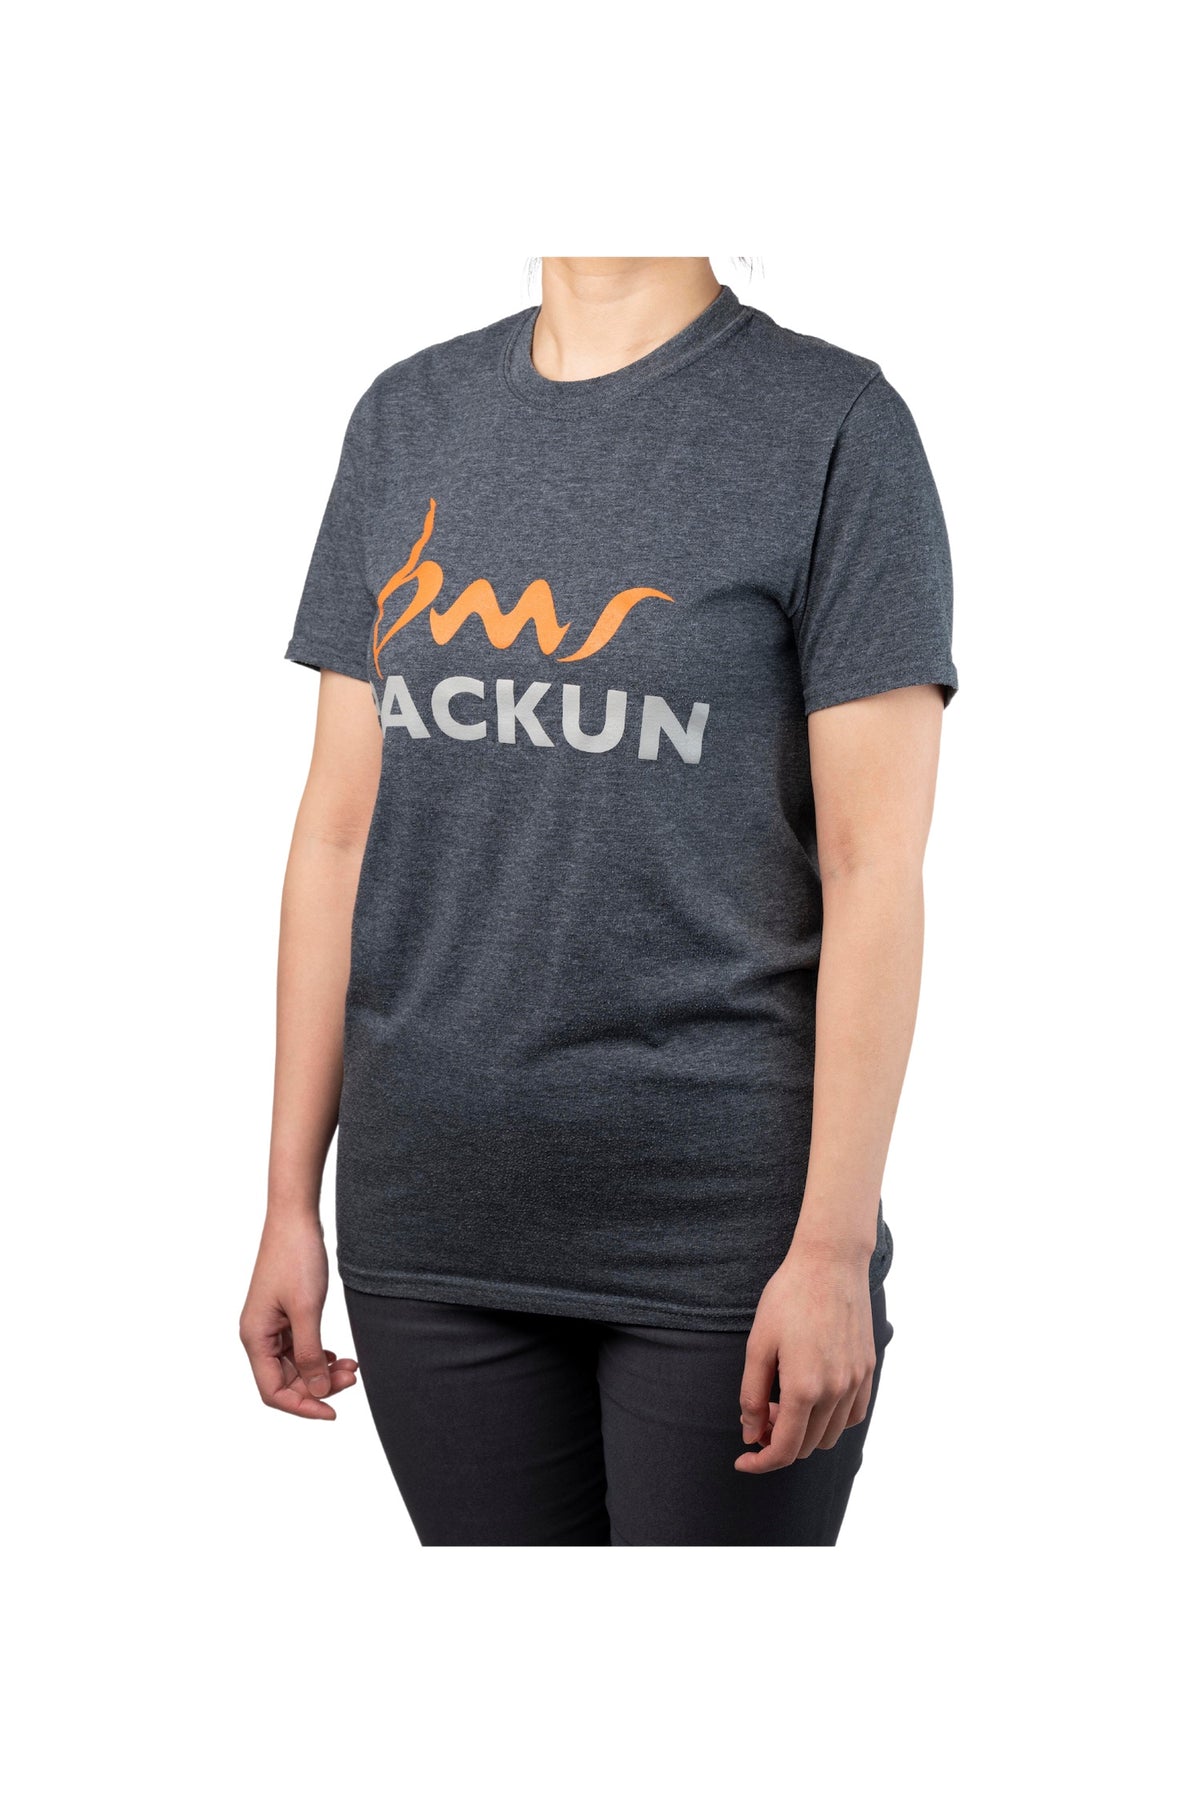 backun-shirt-2